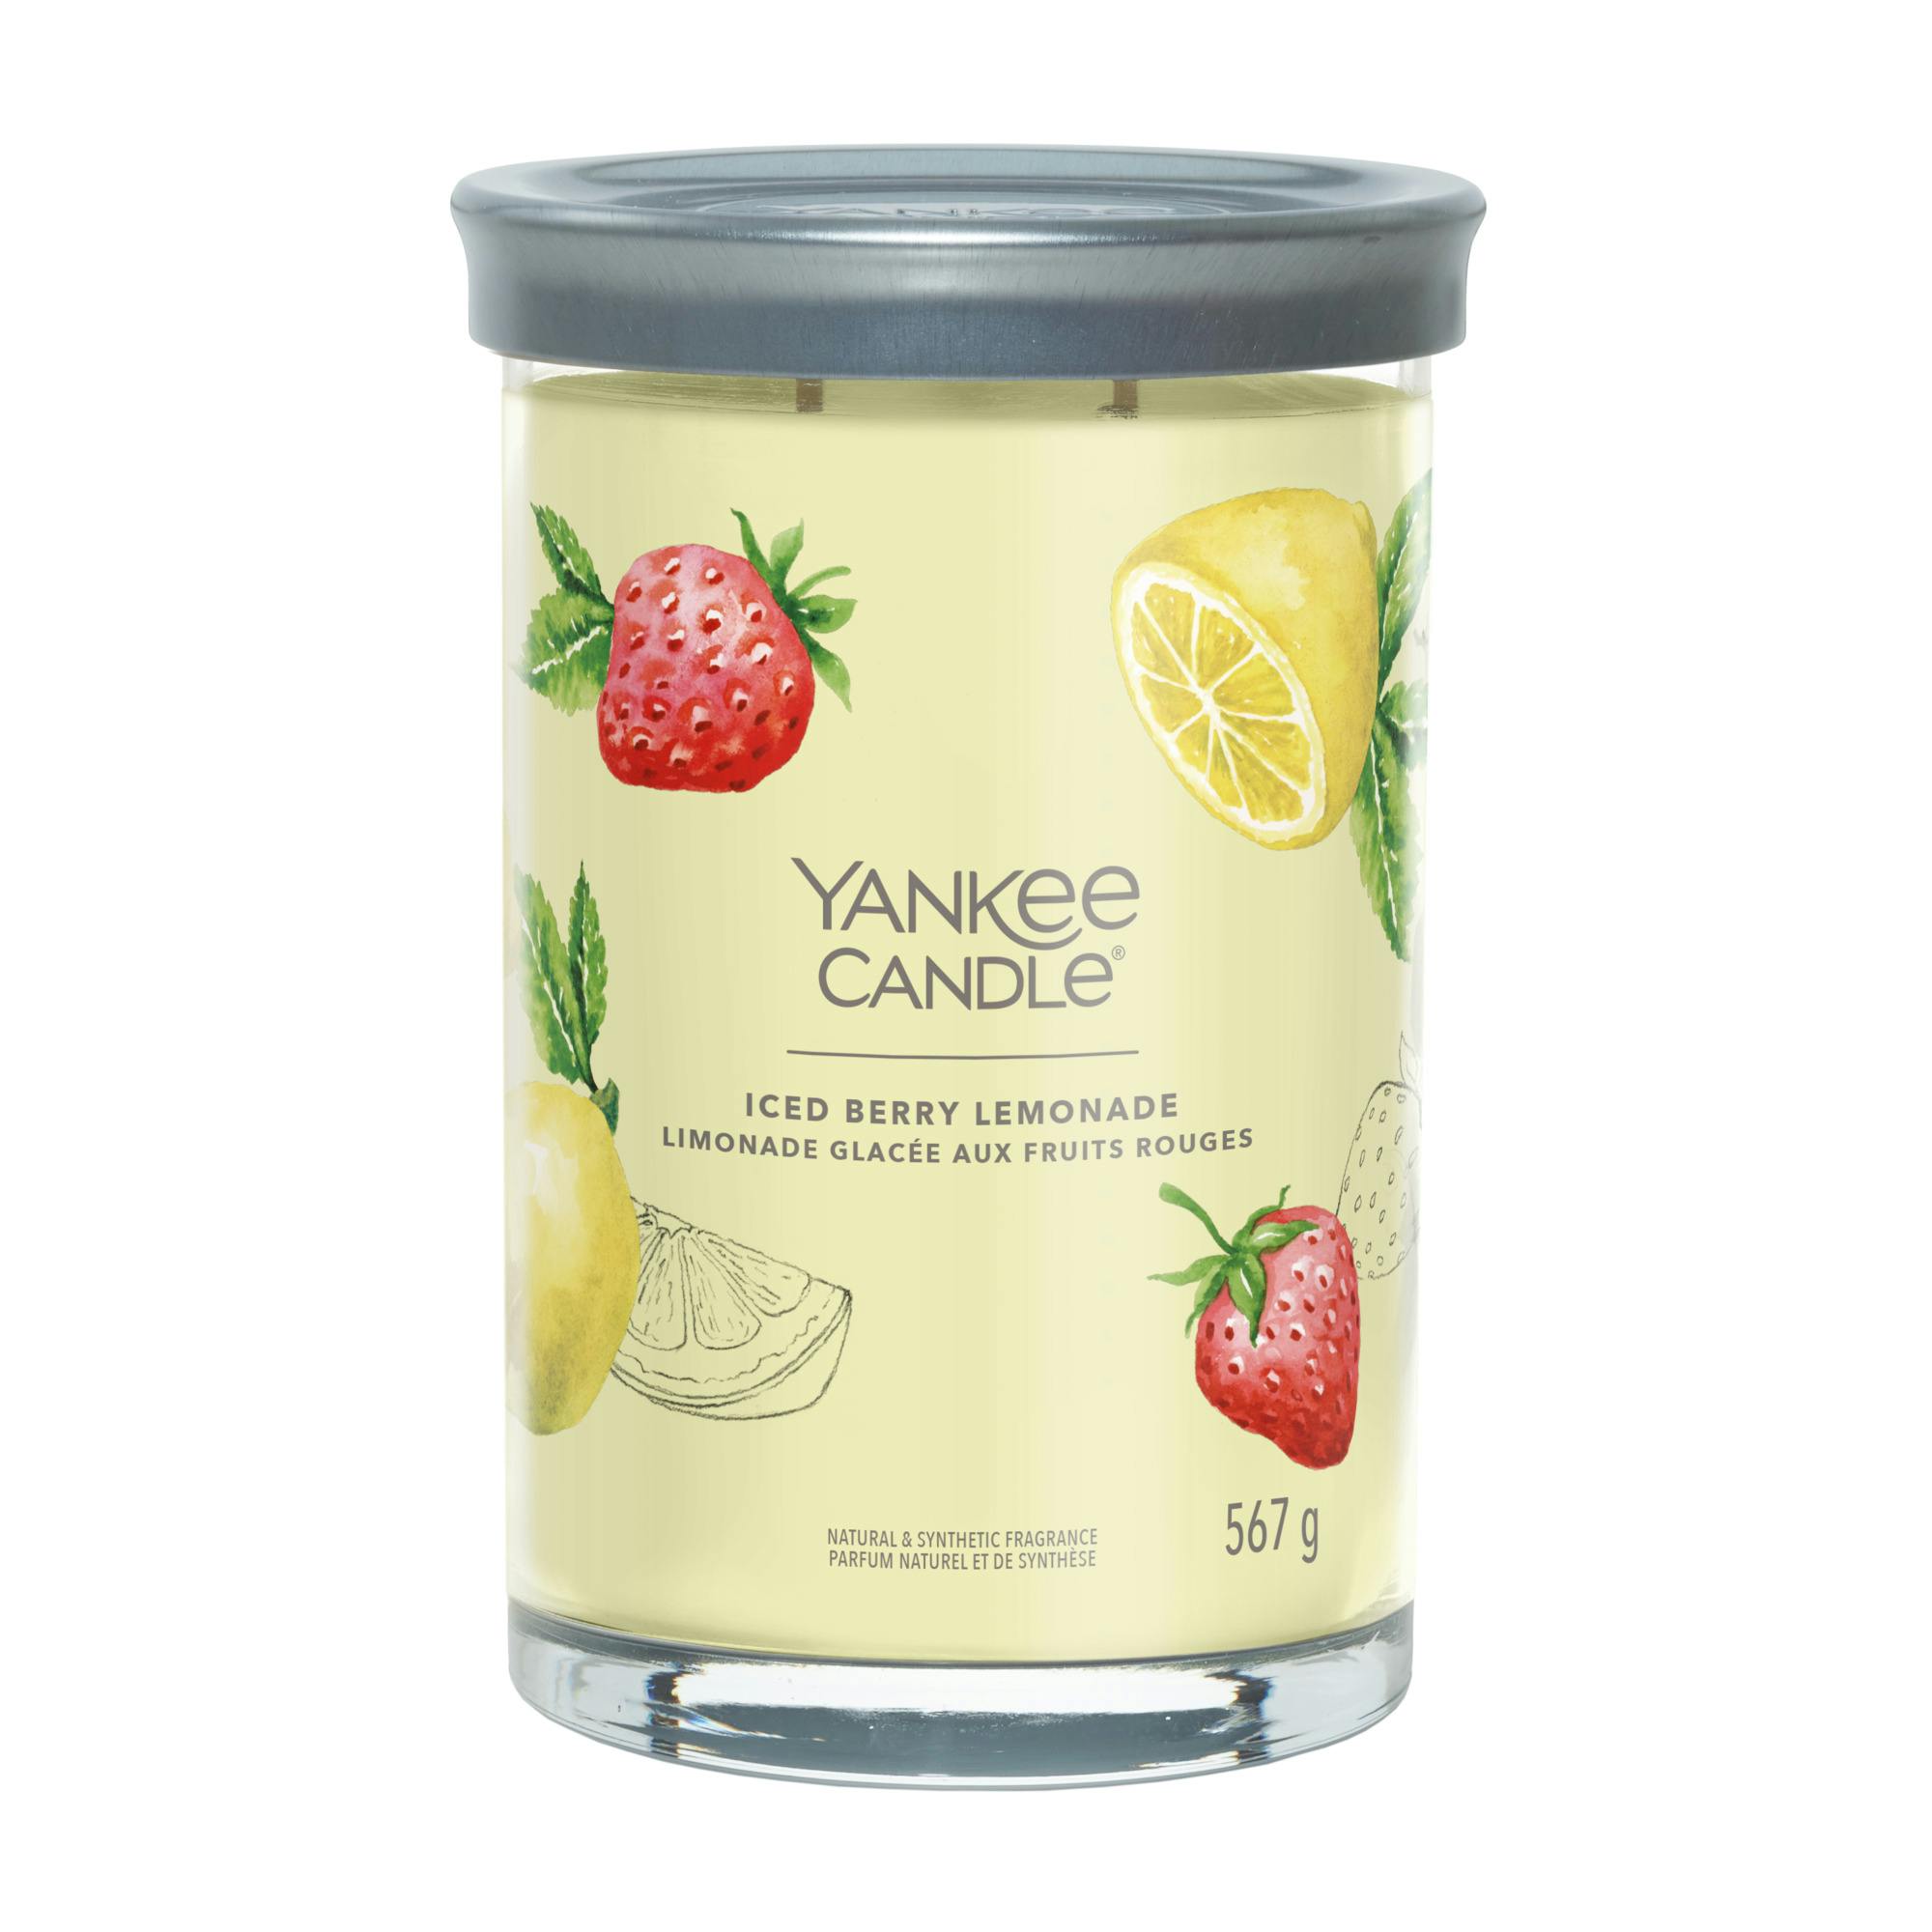 Yankee Candle Iced Berry Lemonade Signature Large Tumbler Duftkerze